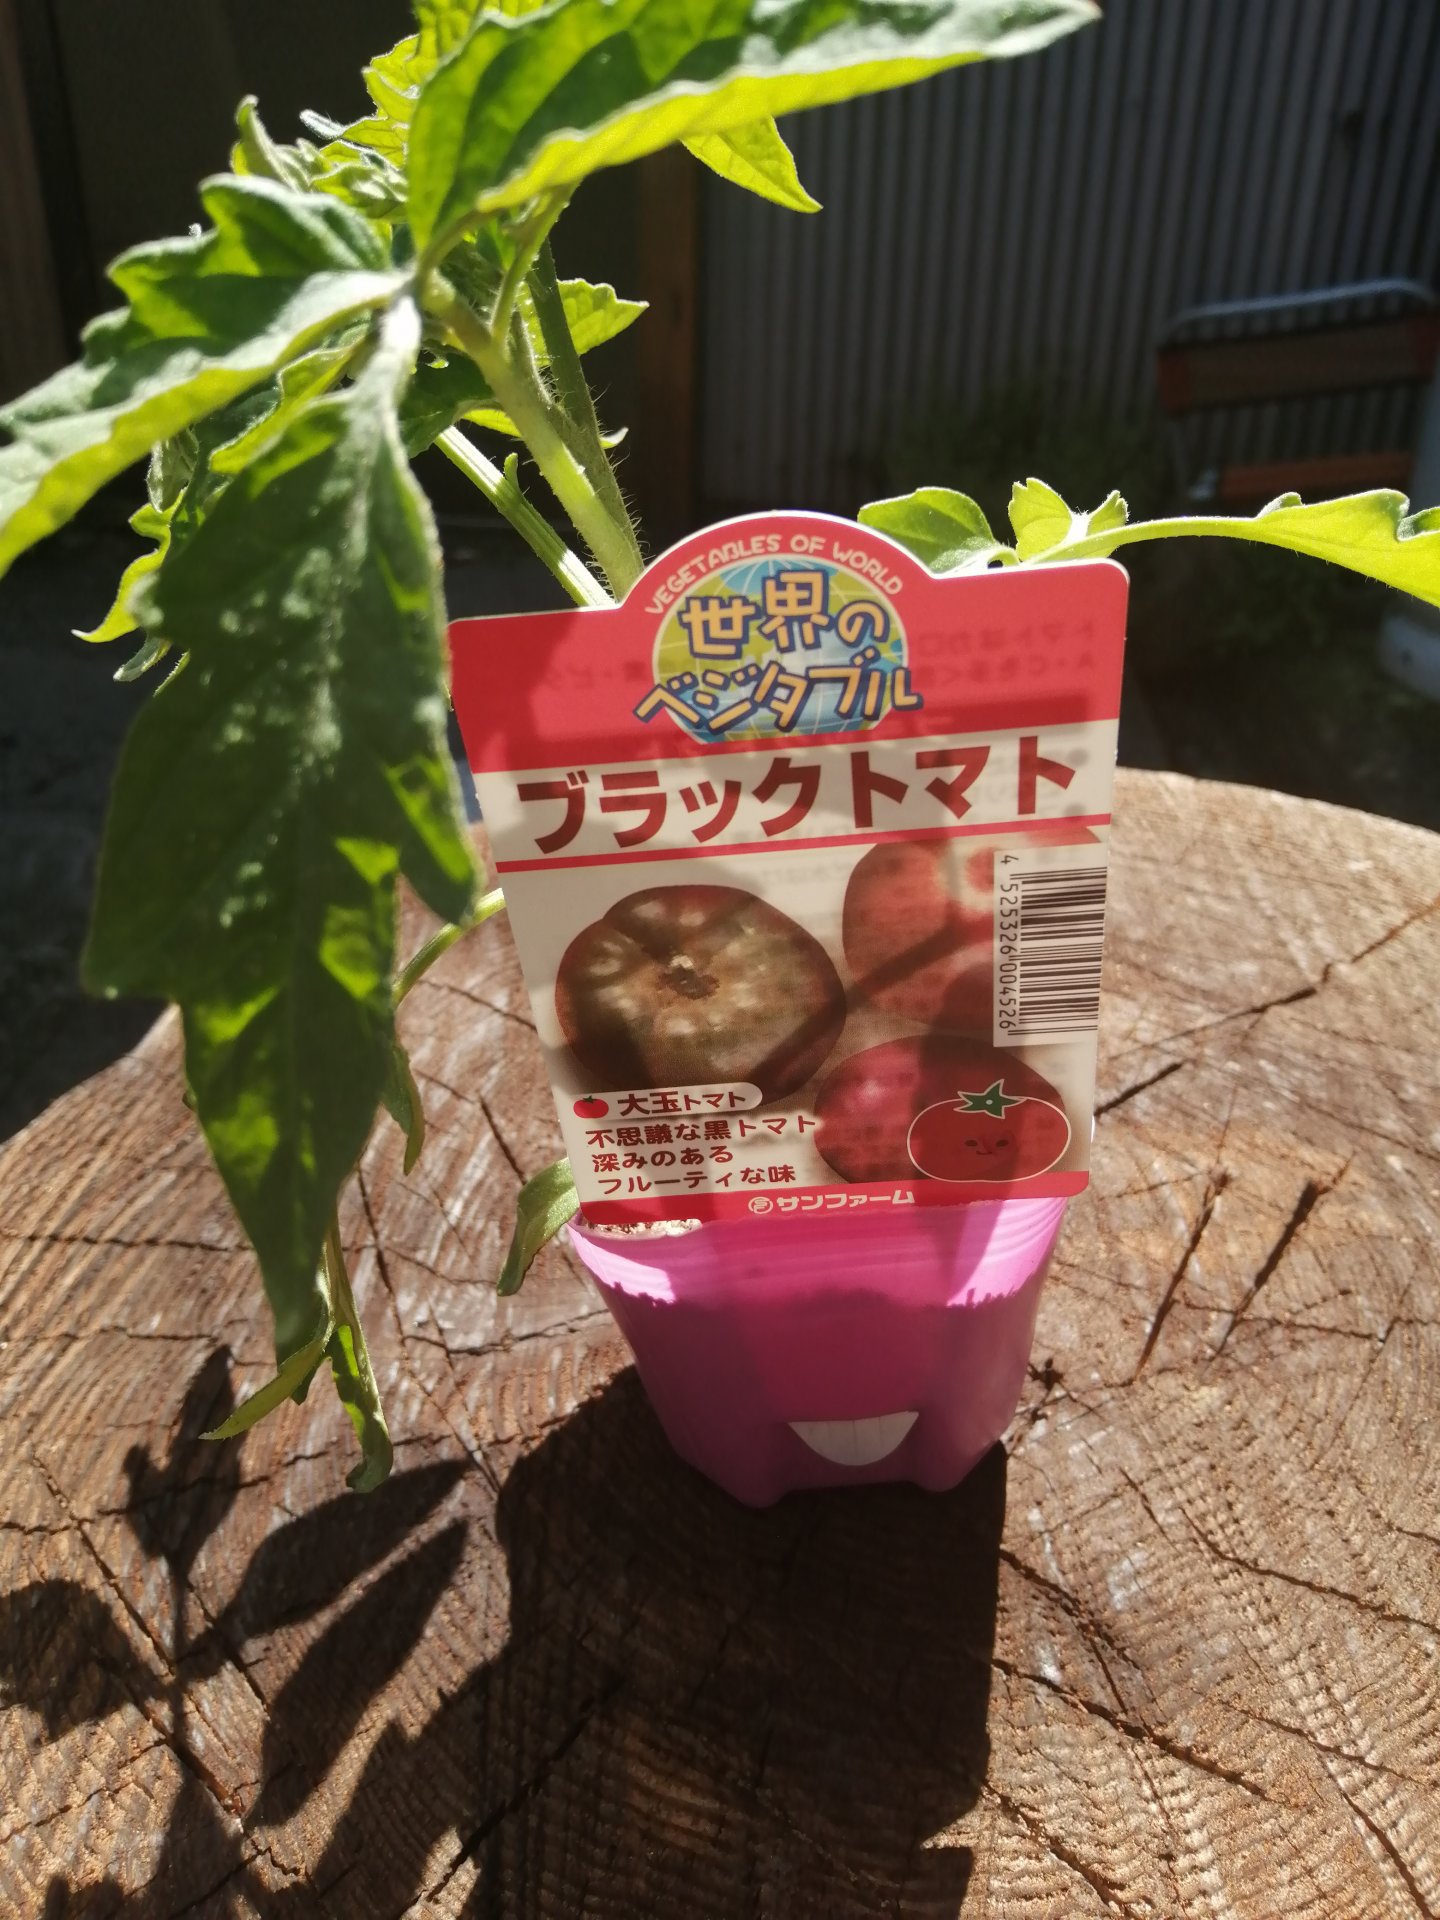 Japanese Black Trifele tomato